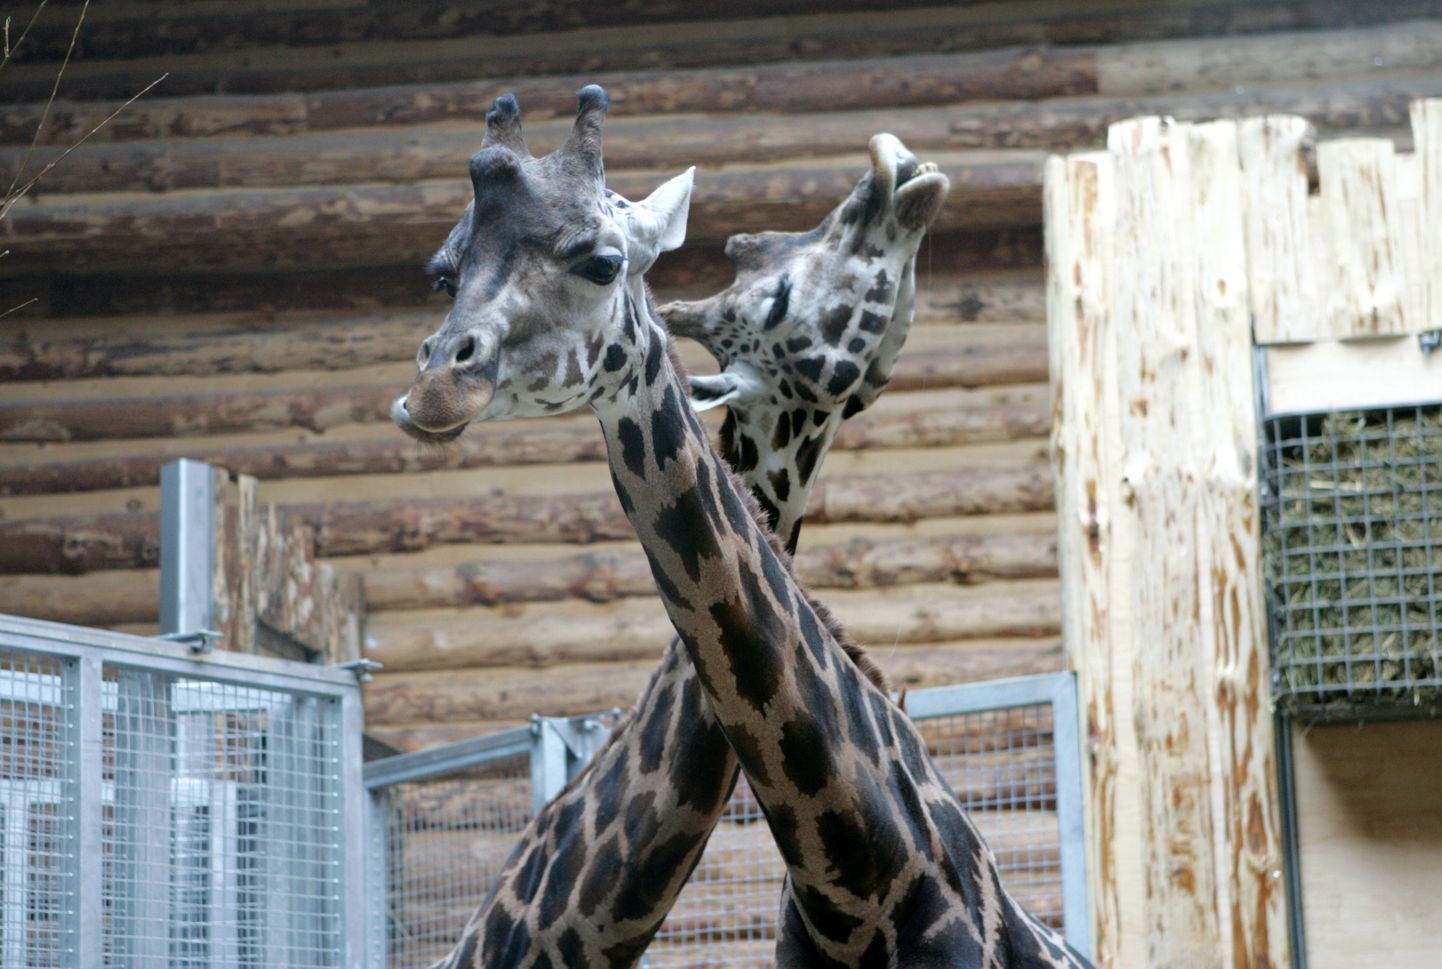 9 октября в Рижском зоосаде состоялось официальное открытие нового дома для жирафов. Теперь посетители смогут посмотреть на Пика и Перископа, которые были доставлены в Ригу из Польши